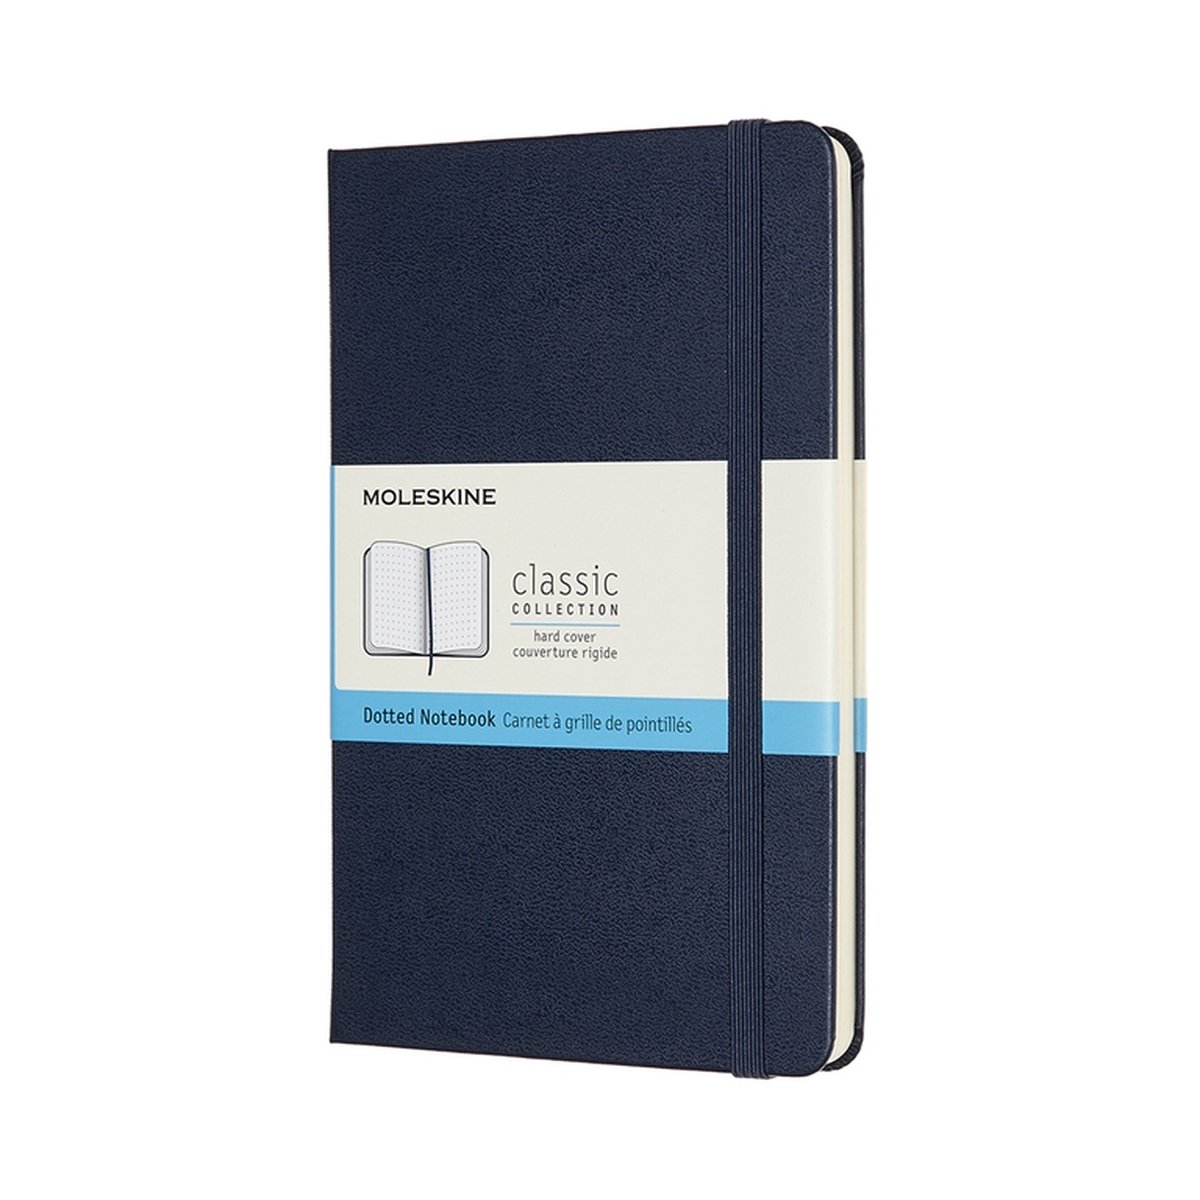 Moleskine Classic – Notitieboek – Bullet Journal – Medium – 11,5×18 cm – Hardcover – Gestippeld – Dotted – Saffier Blauw